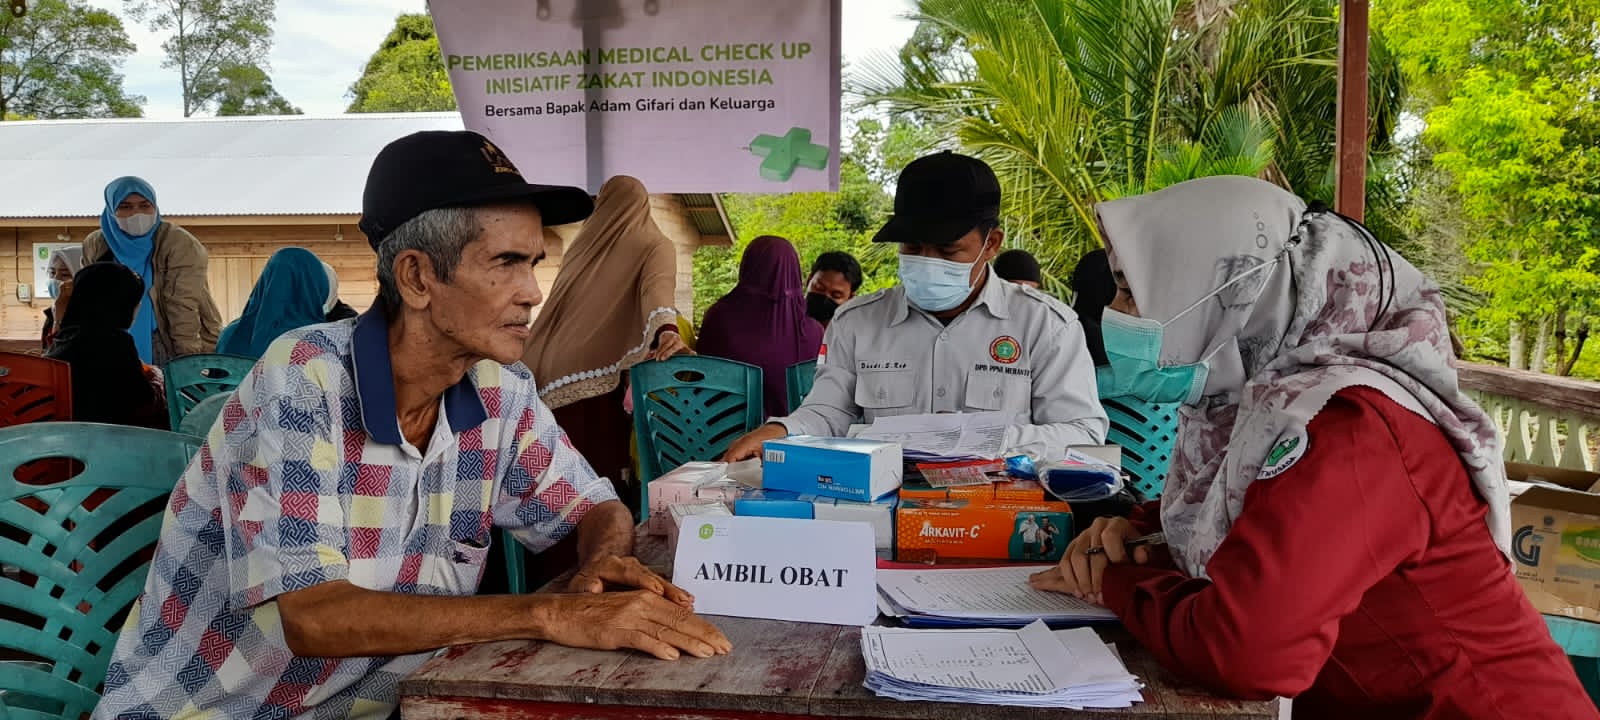 IZI Riau Bersama Adam Gifari Adakan Layanan kesehatan Gratis di Desa Pedalaman Meranti